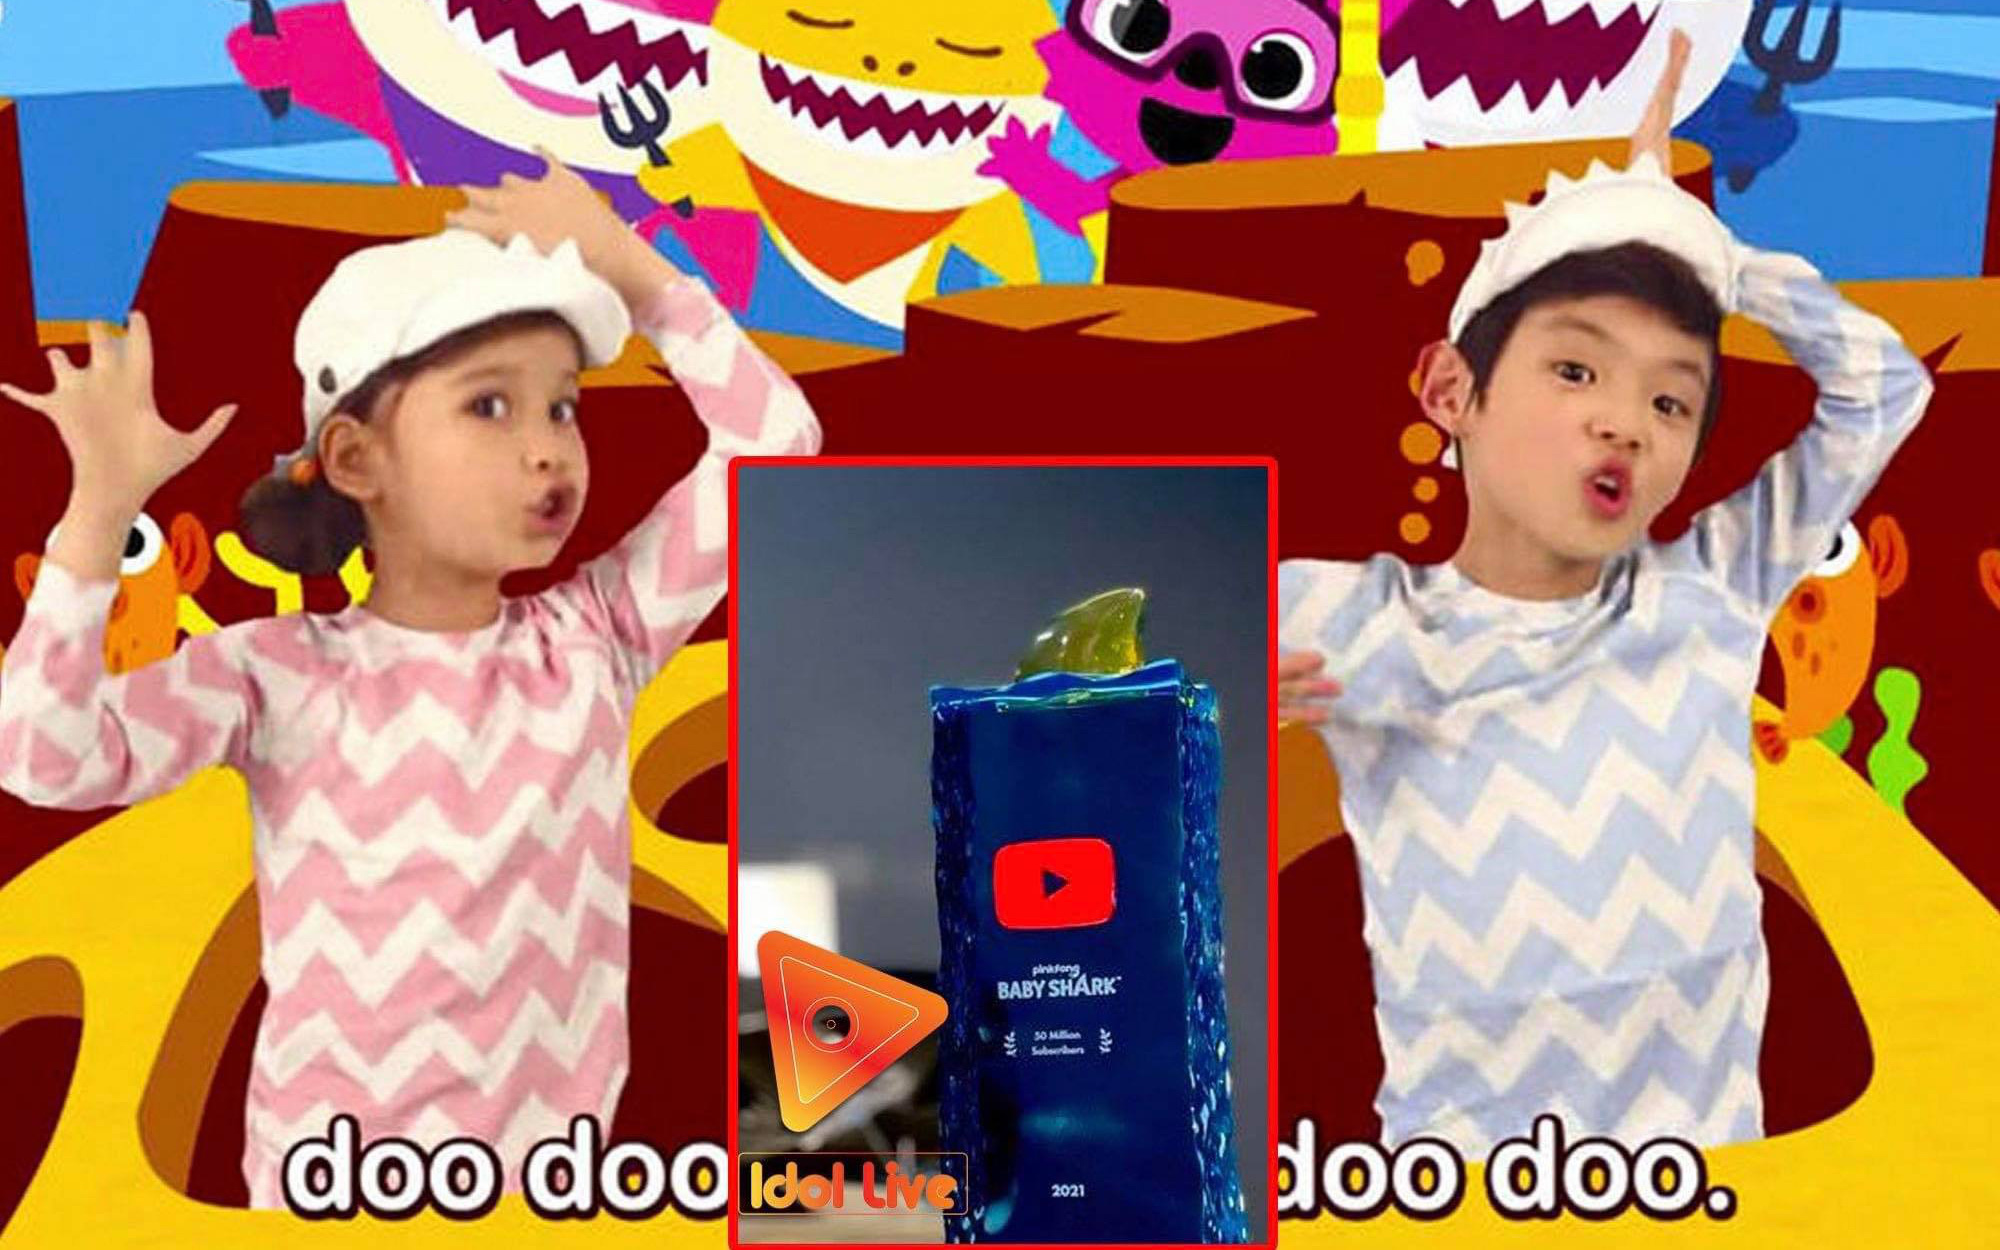 MV quốc dân "Baby Shark" đạt 9 tỷ view, kênh Pinkfong Baby Shark nhận nút Ruby từ Youtube: Còn đẻ là còn tăng!